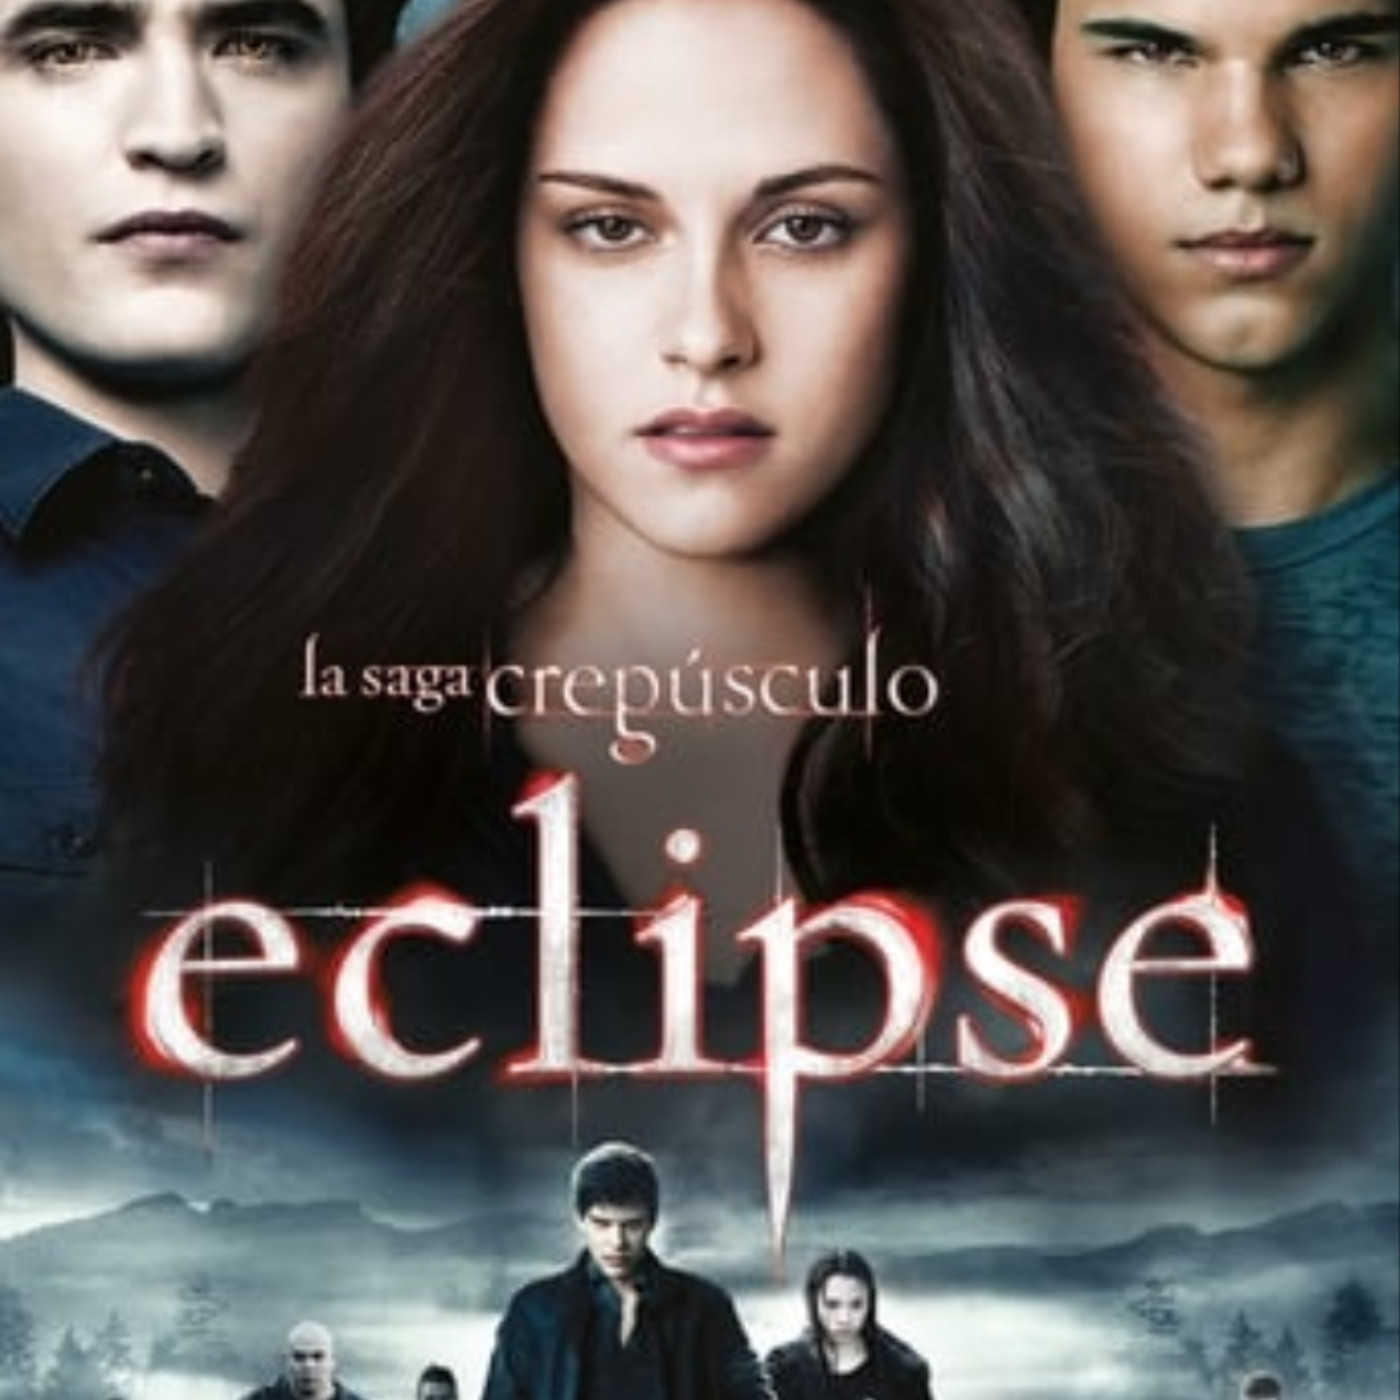 Ver La saga Crepúsculo: Eclipse online gratis en español y latino | Podcast on SoundOn